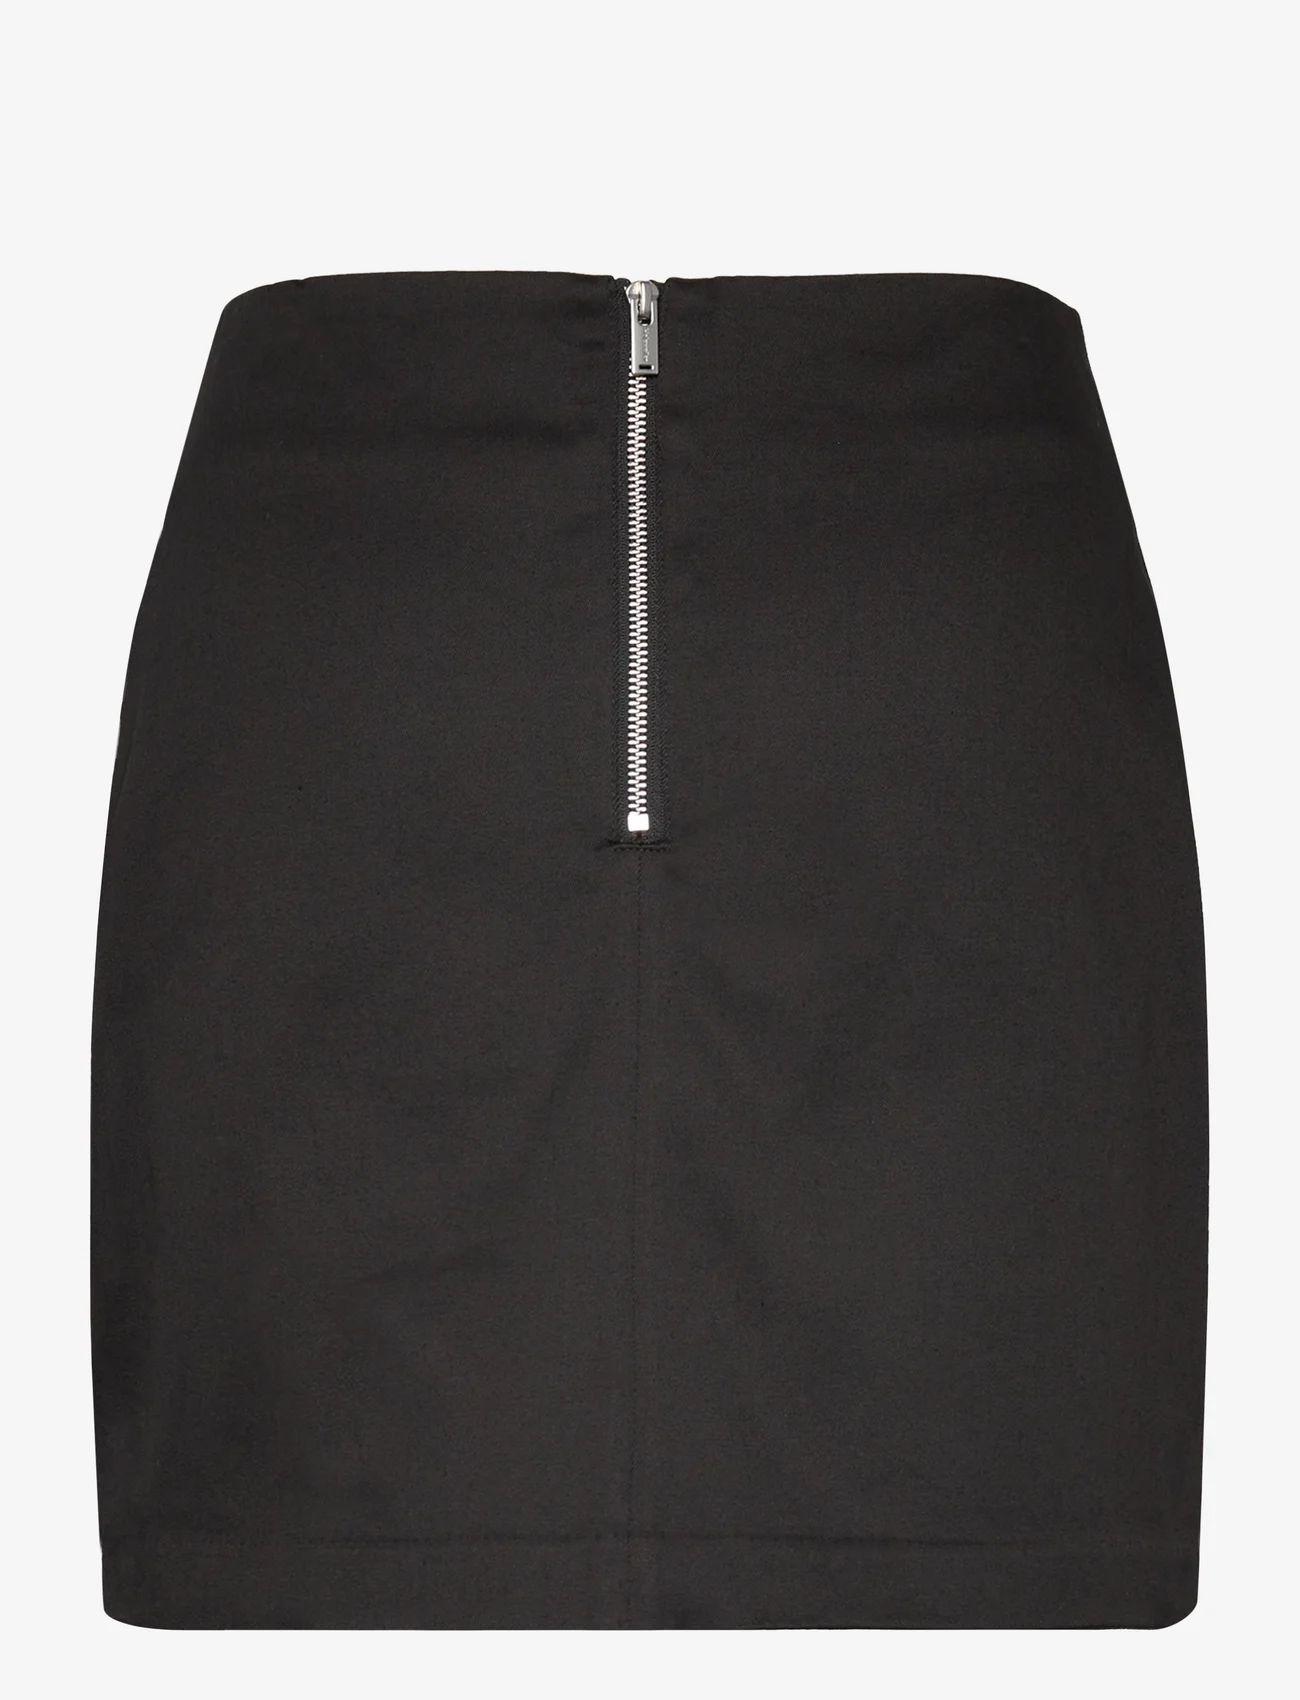 HOLZWEILER - Caro Cargo Skirt - short skirts - black - 1